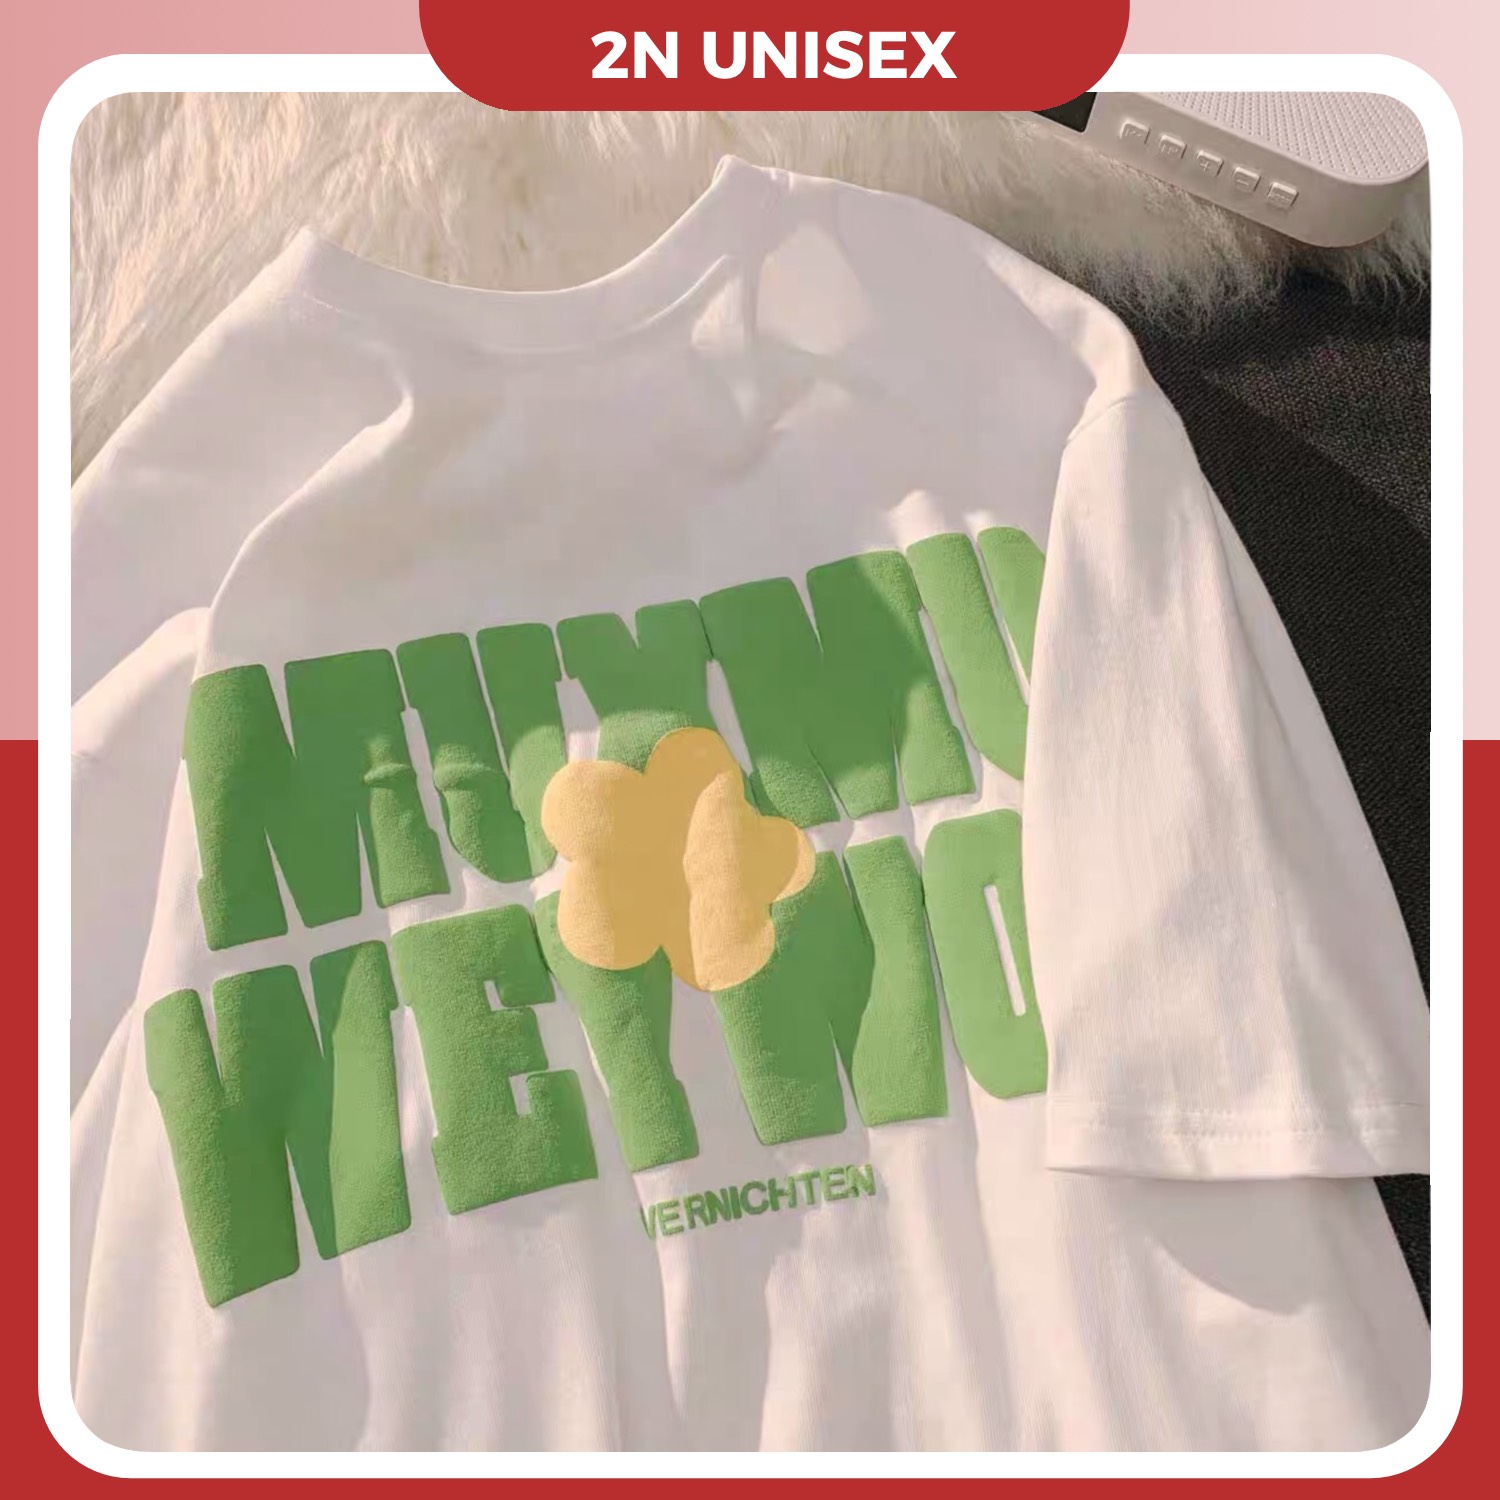 Áo thun tay lỡ form rộng - phông nam nữ cotton oversize - T shirt hoa muxmu - 2N Unisex